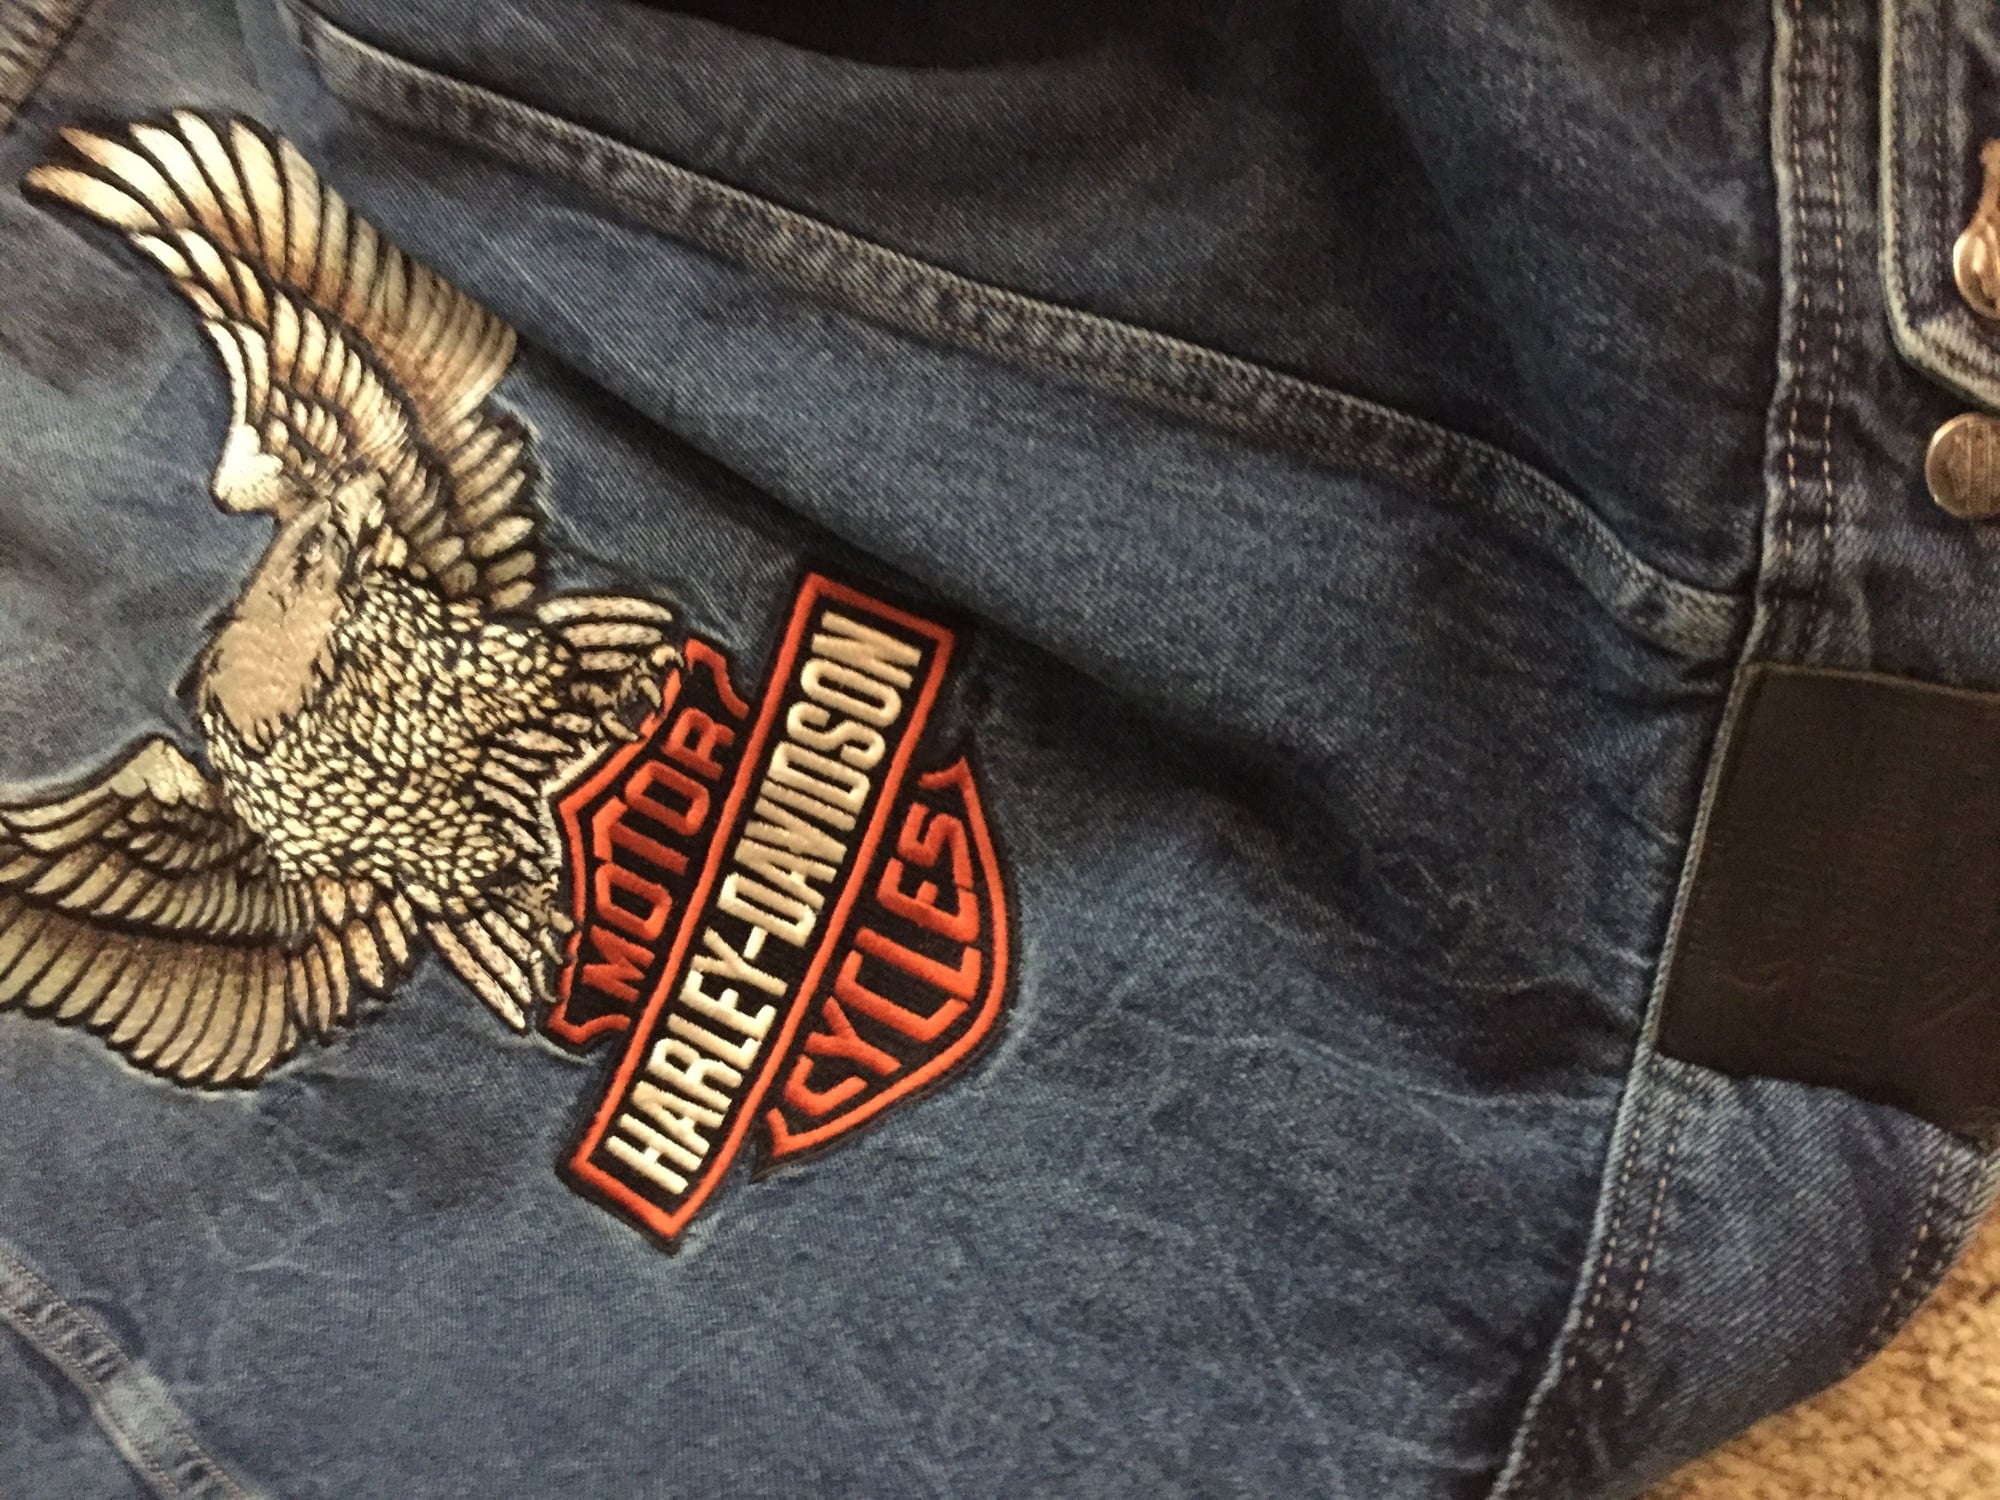 Mens XL jean jacket - Harley Davidson Forums